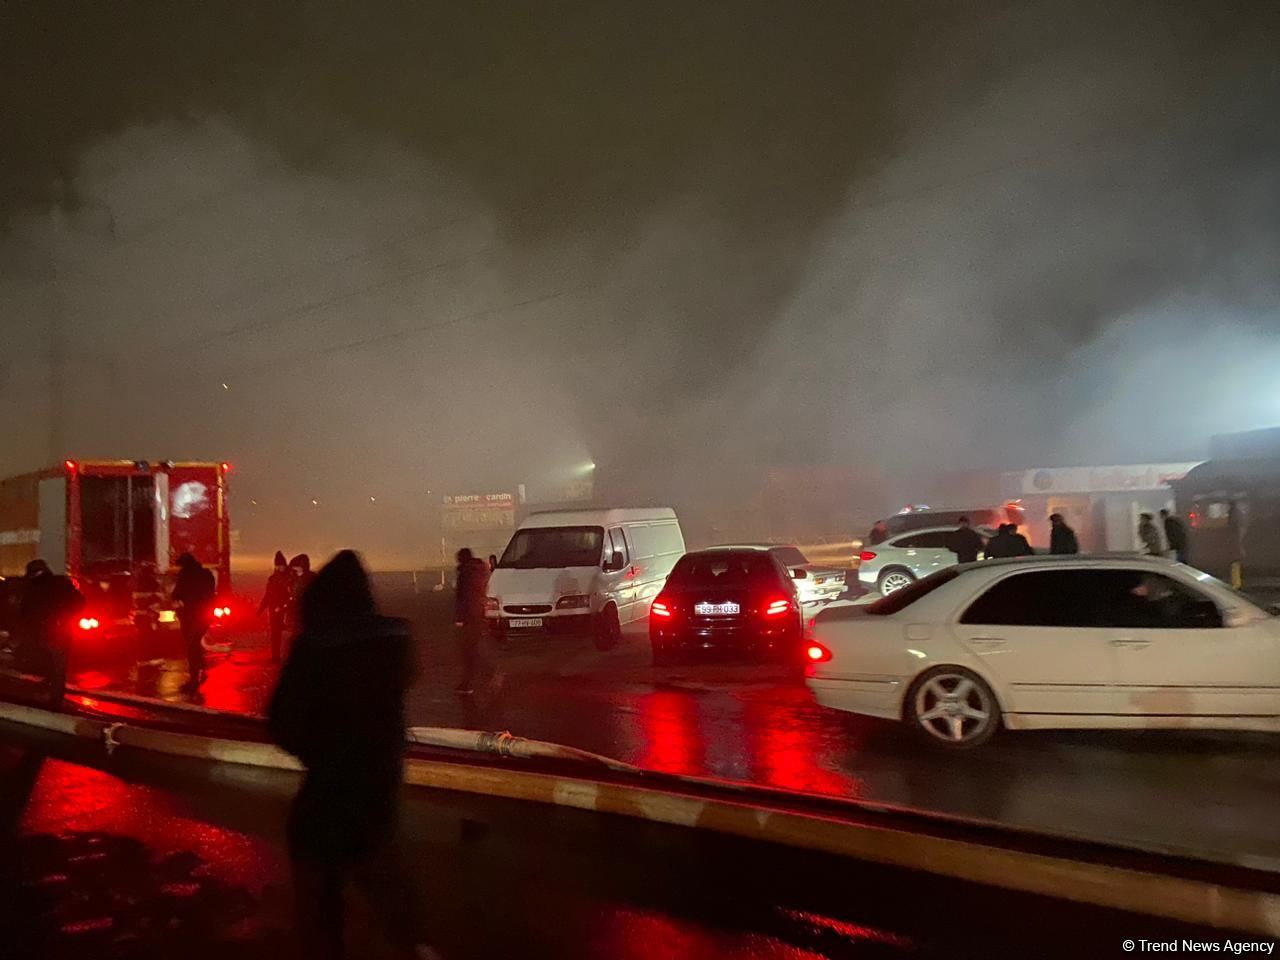 Продолжается тушение пожара, вспыхнувшего в ТЦ "Садарак" в Баку (ФОТО/ВИДЕО) (Обновлено)